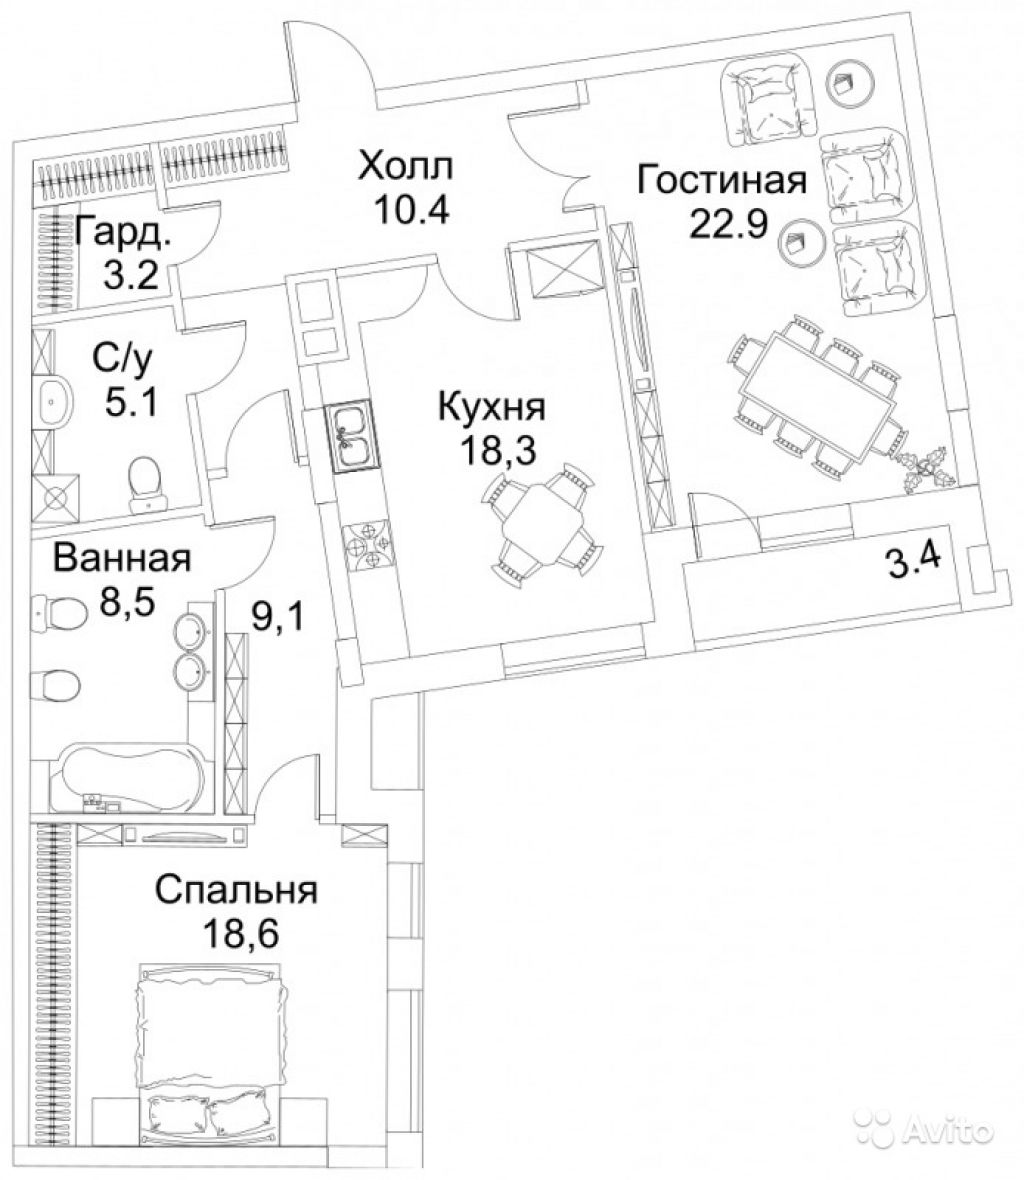 Продам квартиру в новостройке ЖК BARRIN HOUSE (Баррин Хаус) , Trubetskoy House (Трубецкой Хаус) 2-к квартира 97 м² на 11 этаже 12-этажного монолитного дома , тип участия: ДДУ в Москве. Фото 1